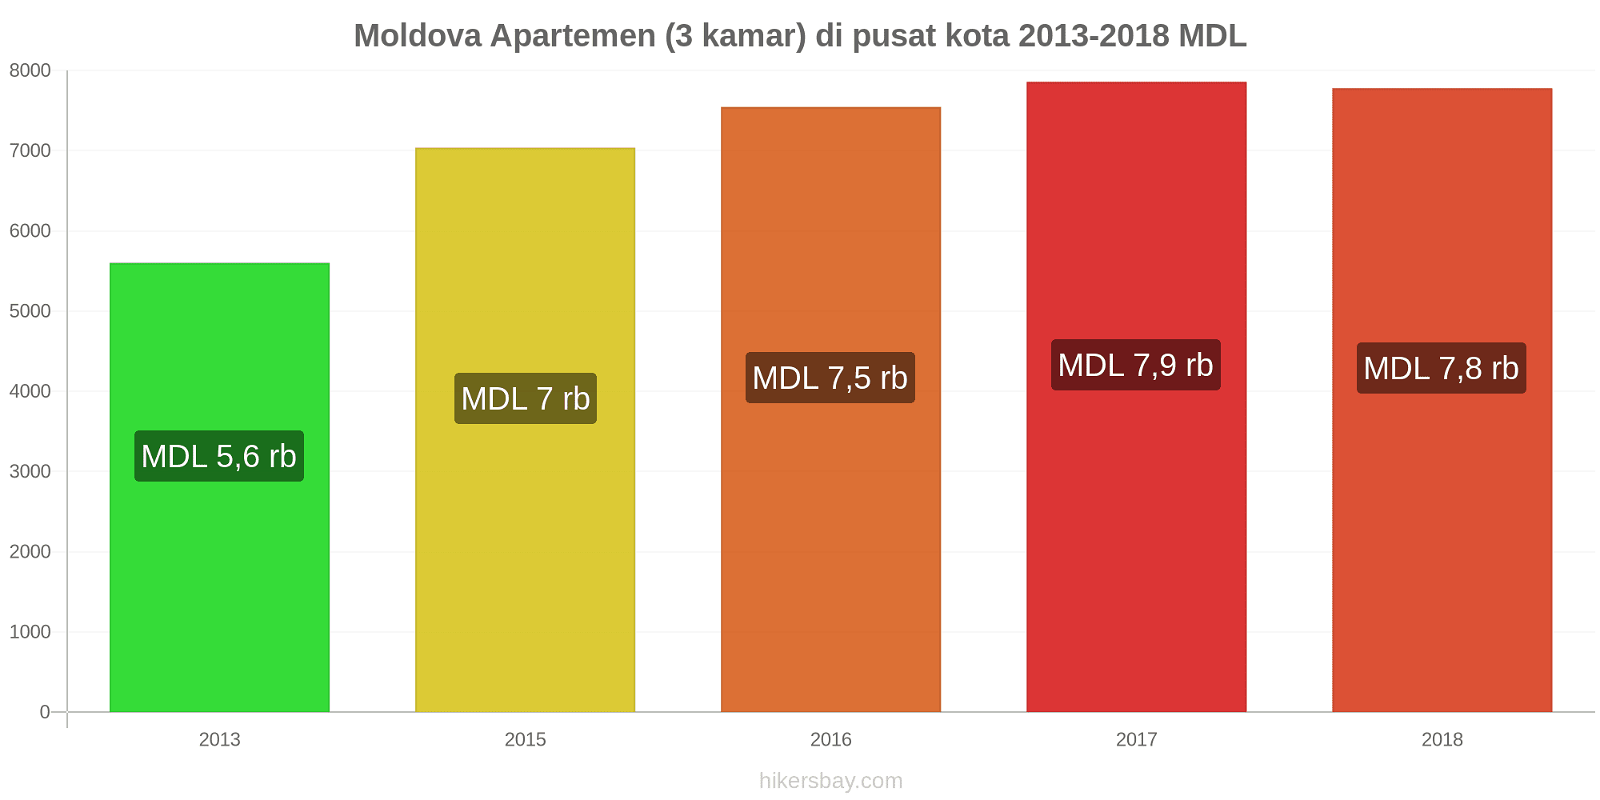 Moldova perubahan harga Apartemen (3 kamar) di pusat kota hikersbay.com